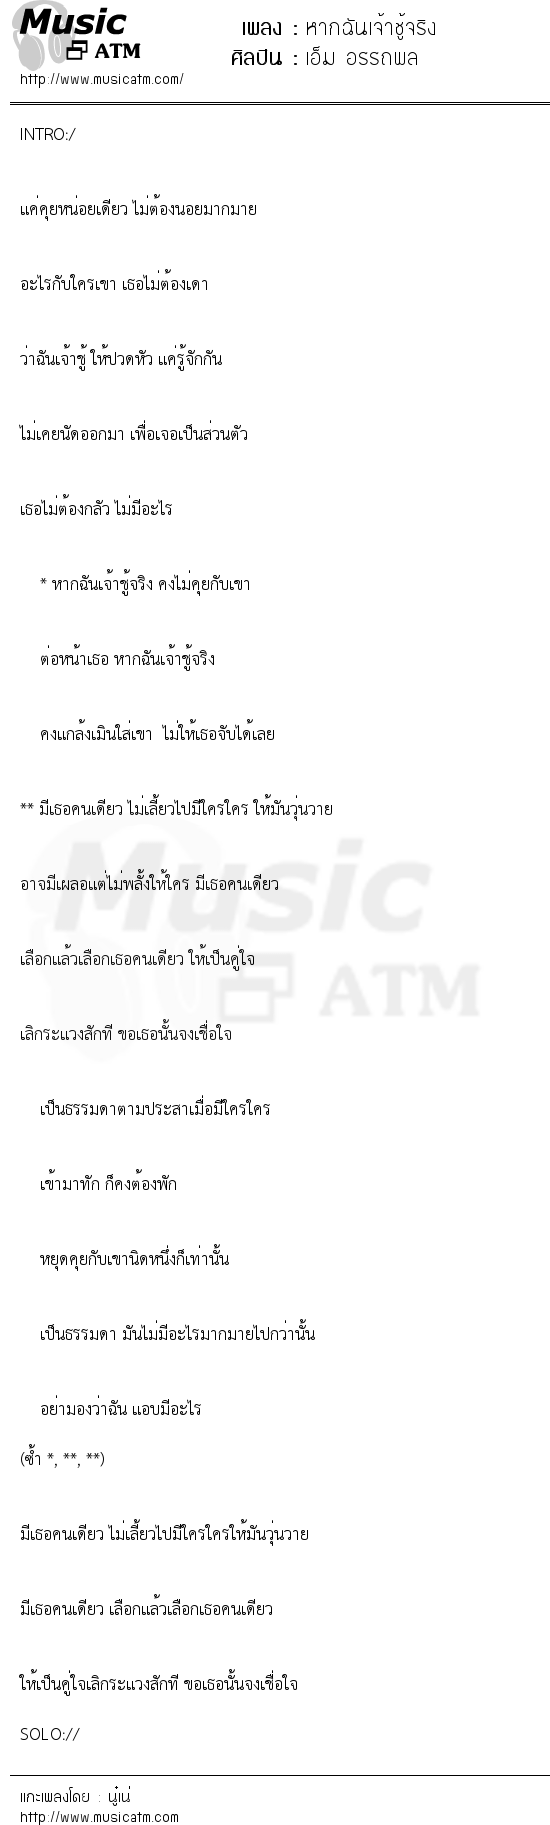 เนื้อเพลง หากฉันเจ้าชู้จริง - เอ็ม อรรถพล | เพลงไทย